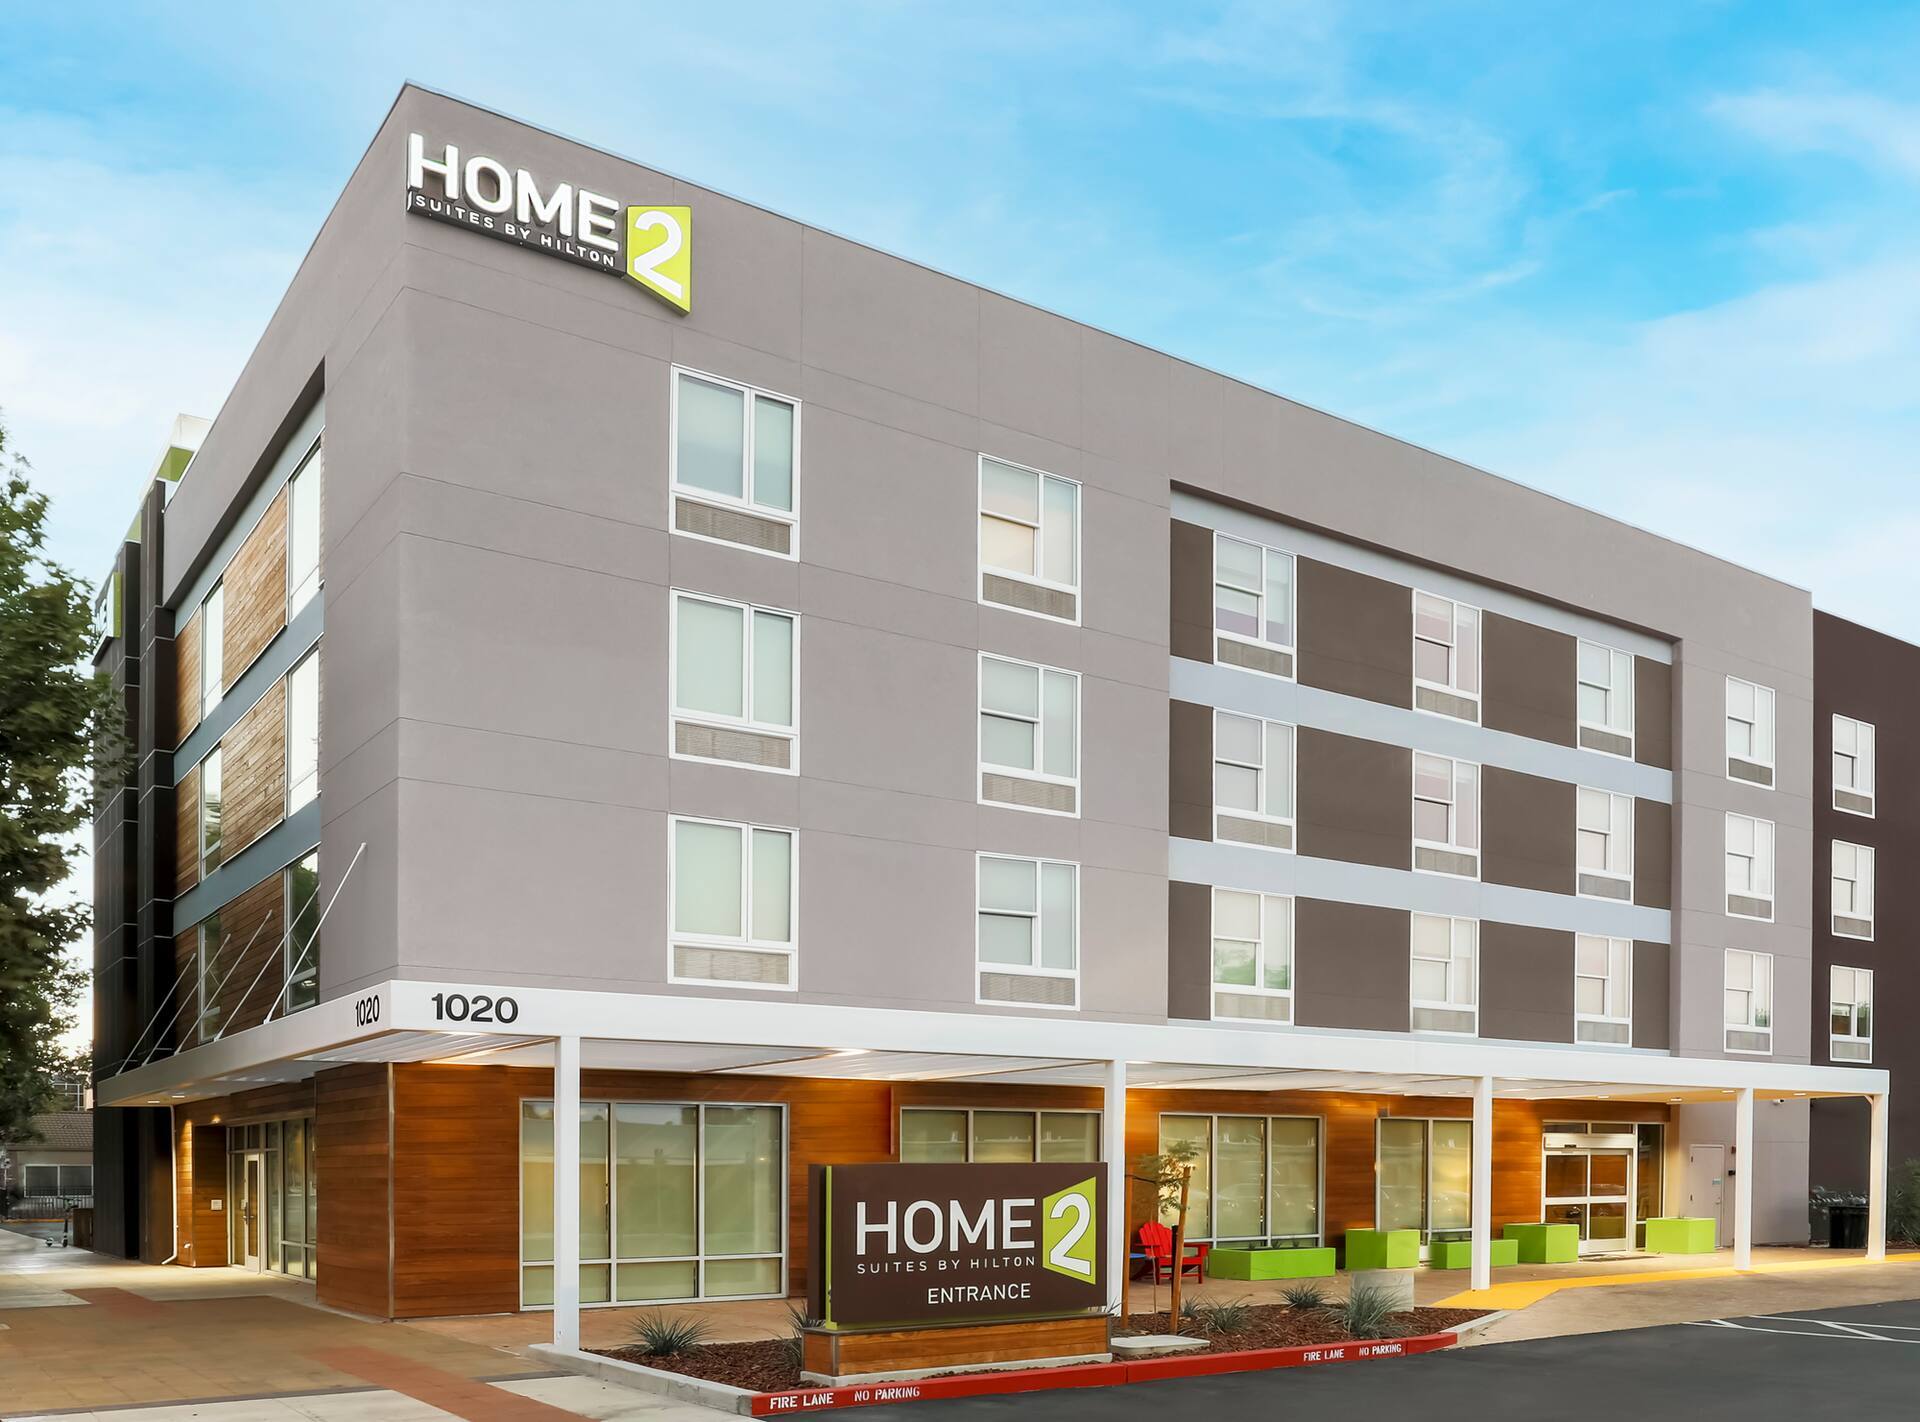 Photo of Home2 Suites by Hilton West Sacramento, West Sacramento, CA